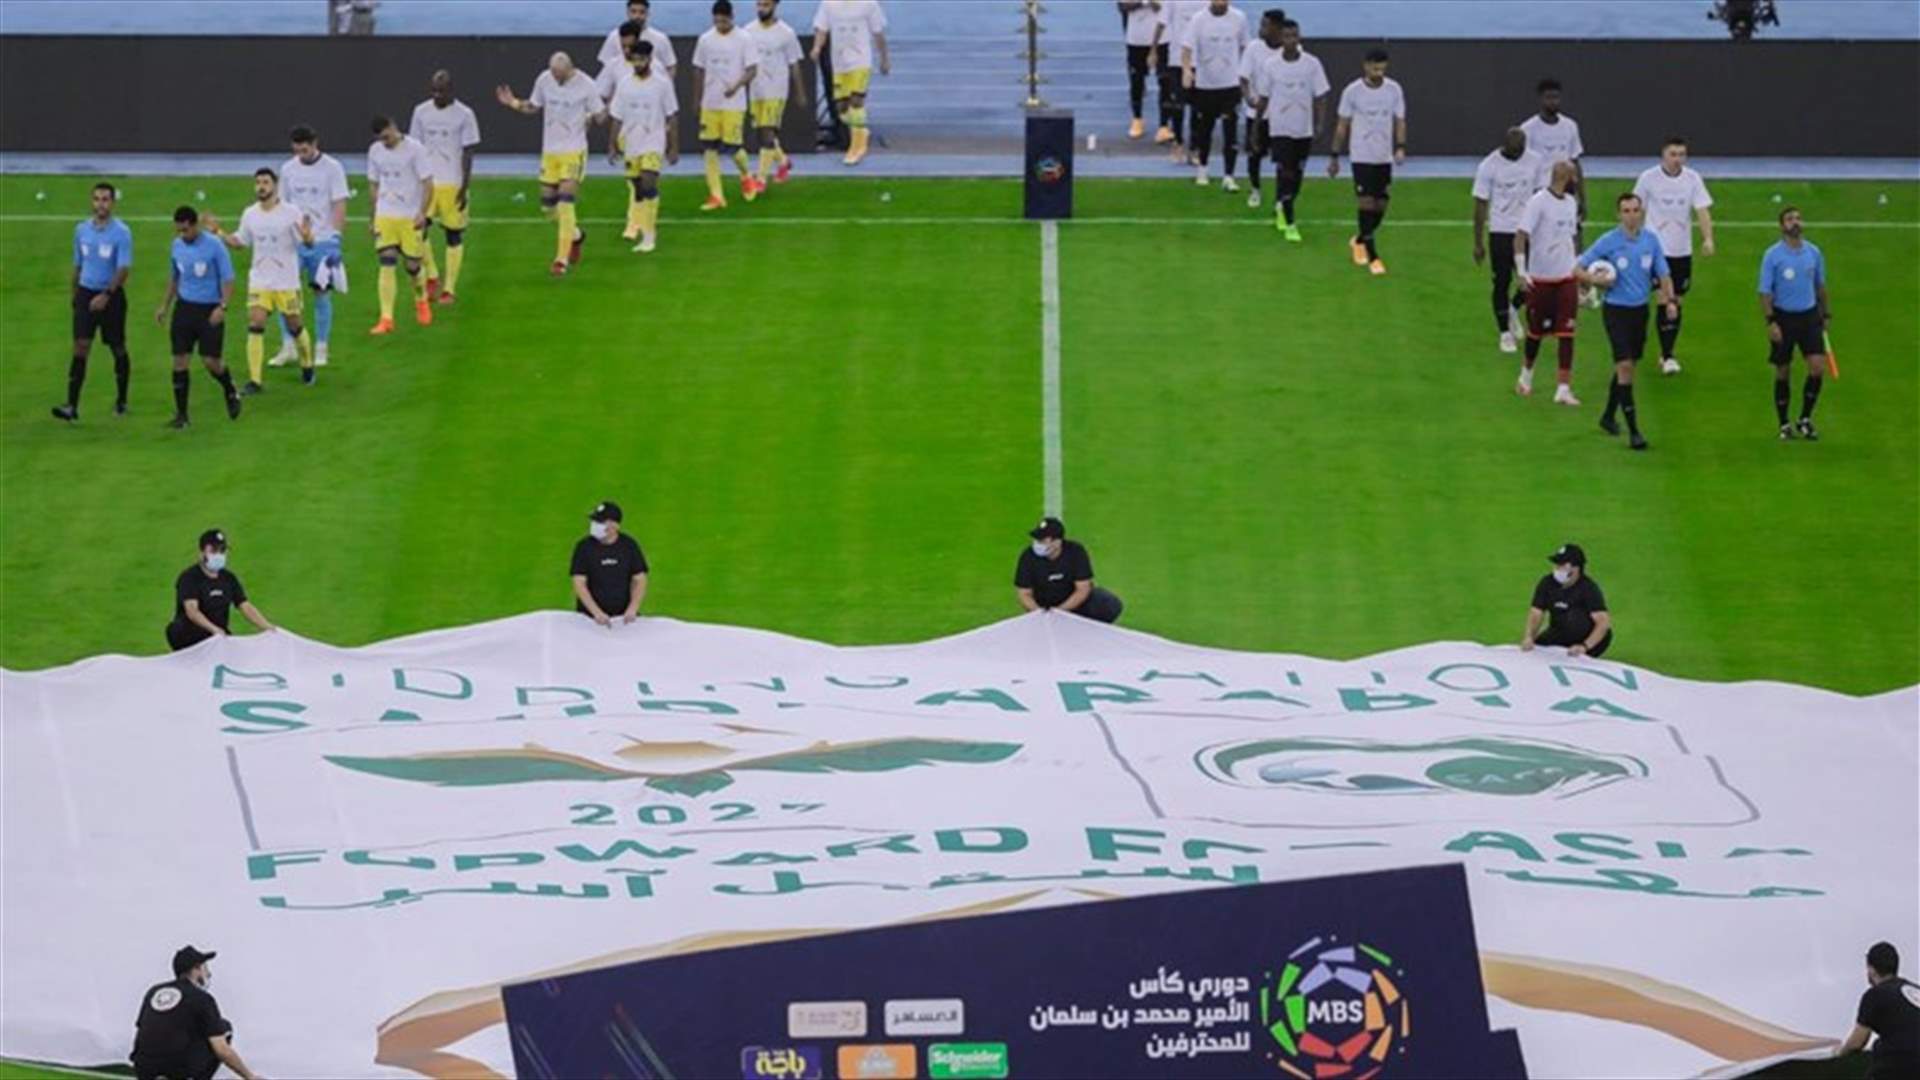 كيف إرتفعت القيمة المالية والتسويقية للدوري السعودي لكرة القدم خلال السنوات الماضية ؟ (فيديو)